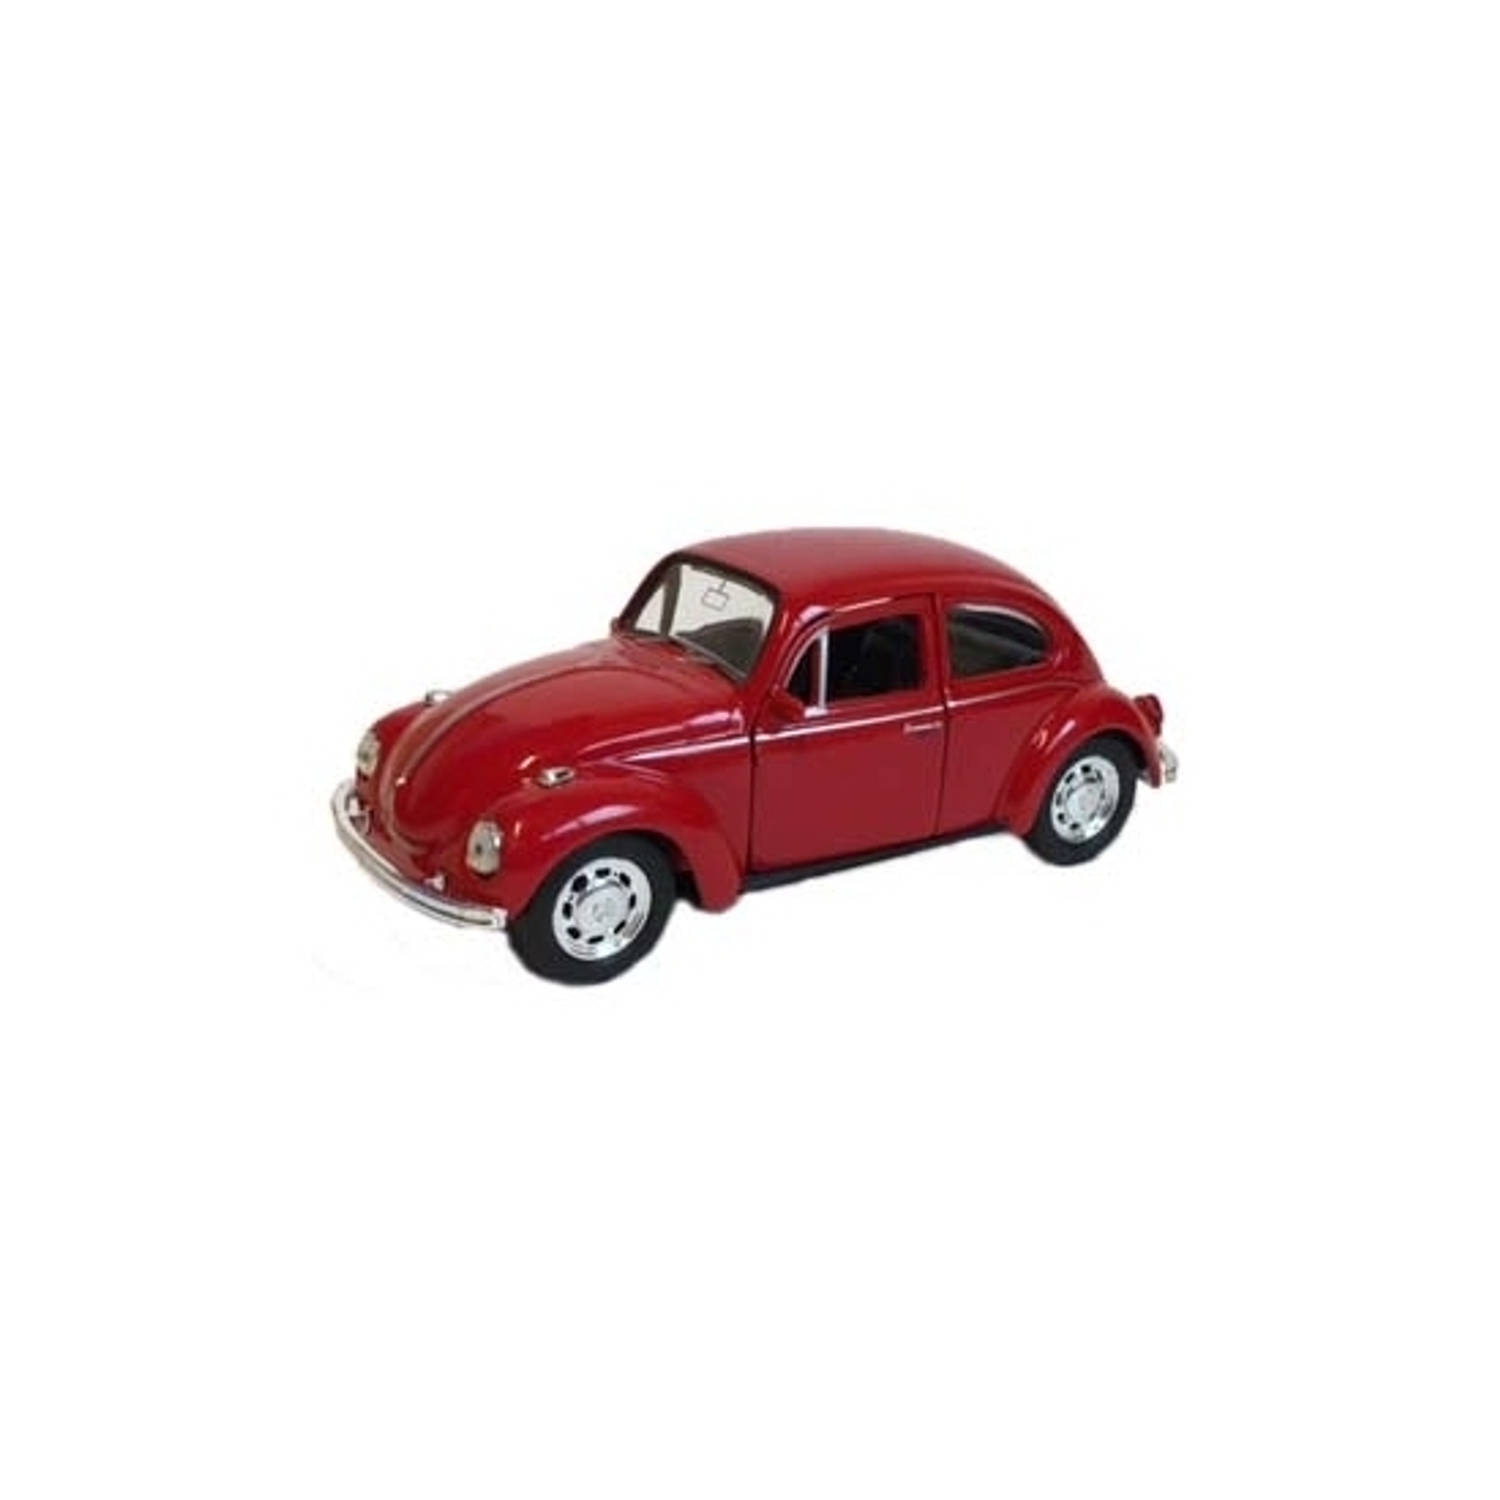 Speelgoed volkswagen kever rode auto 12 cm